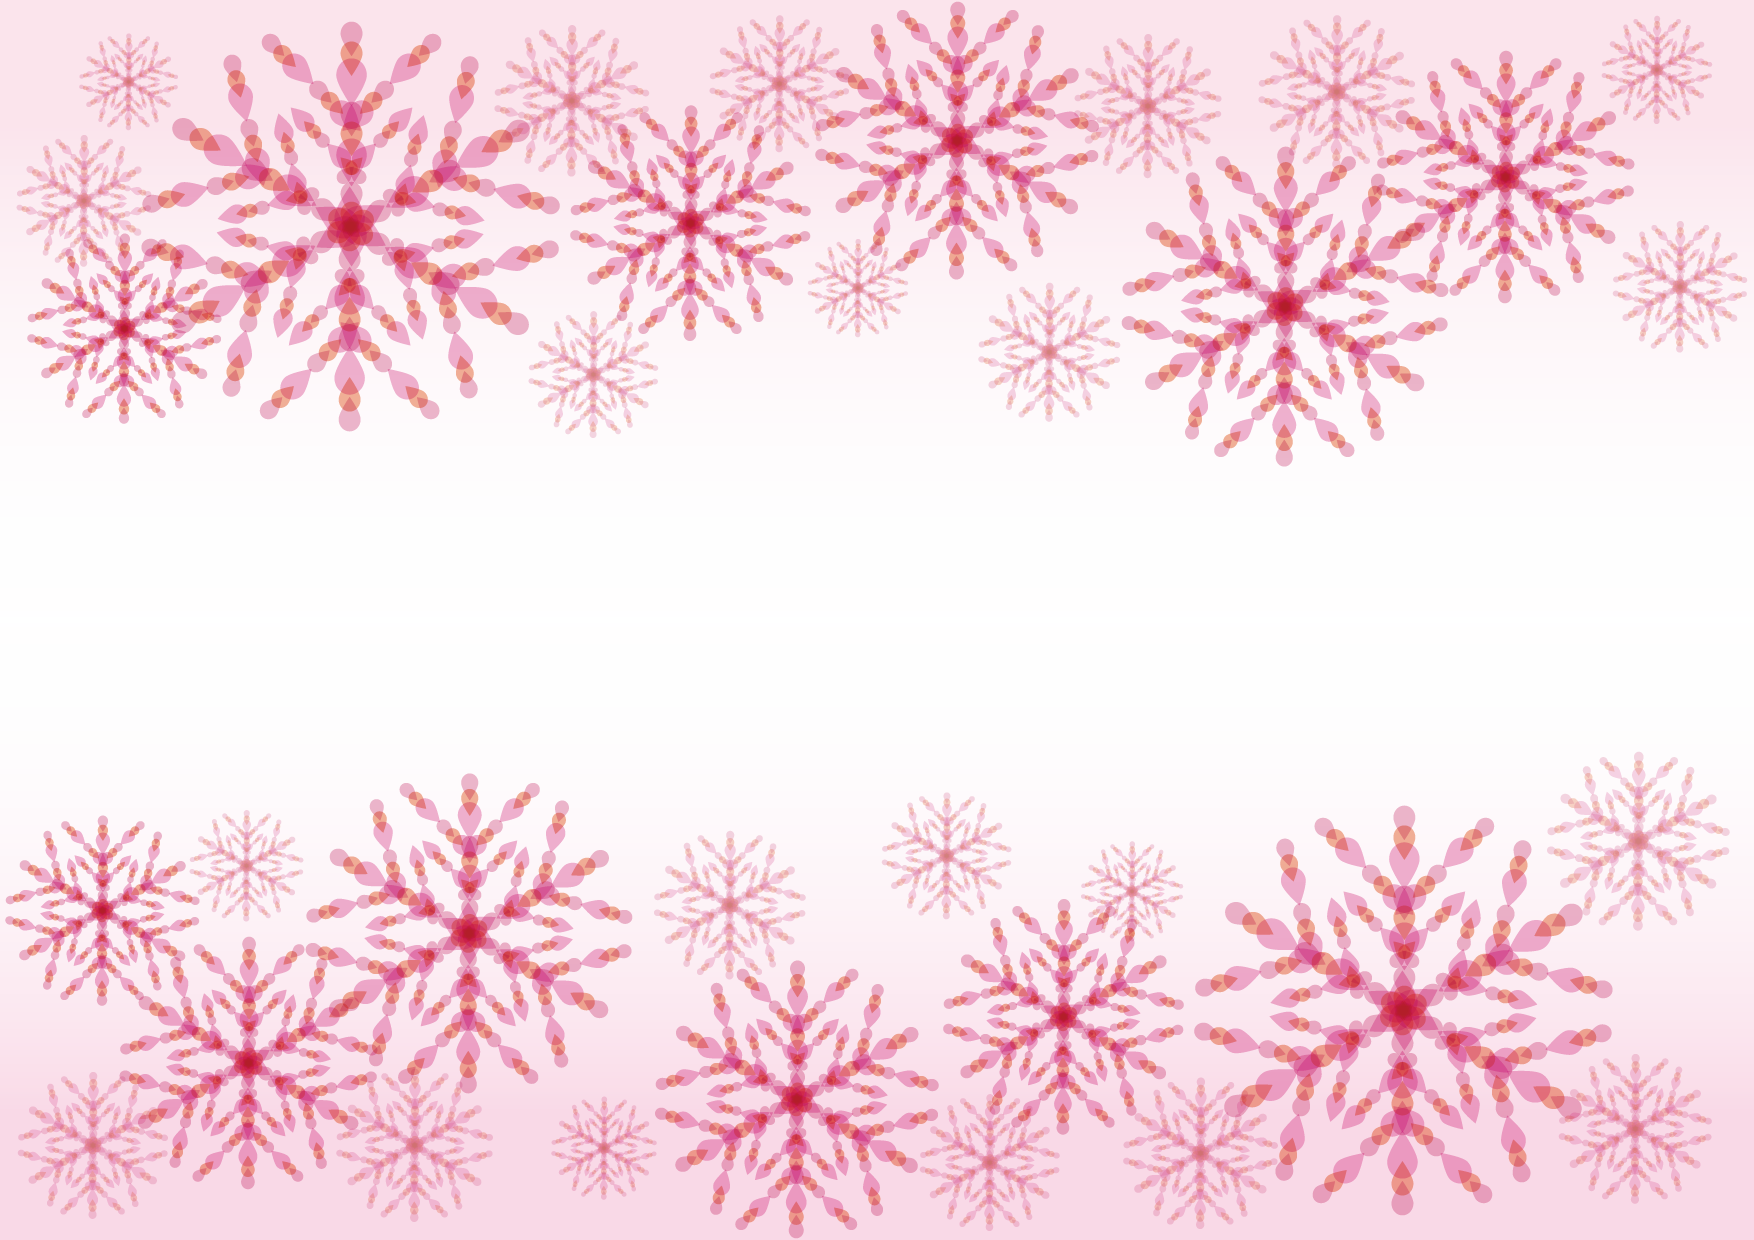 可愛いイラスト無料 雪の結晶 ピンク 背景 Free Illustration Snowflakes Pink Background 公式 イラストダウンロード